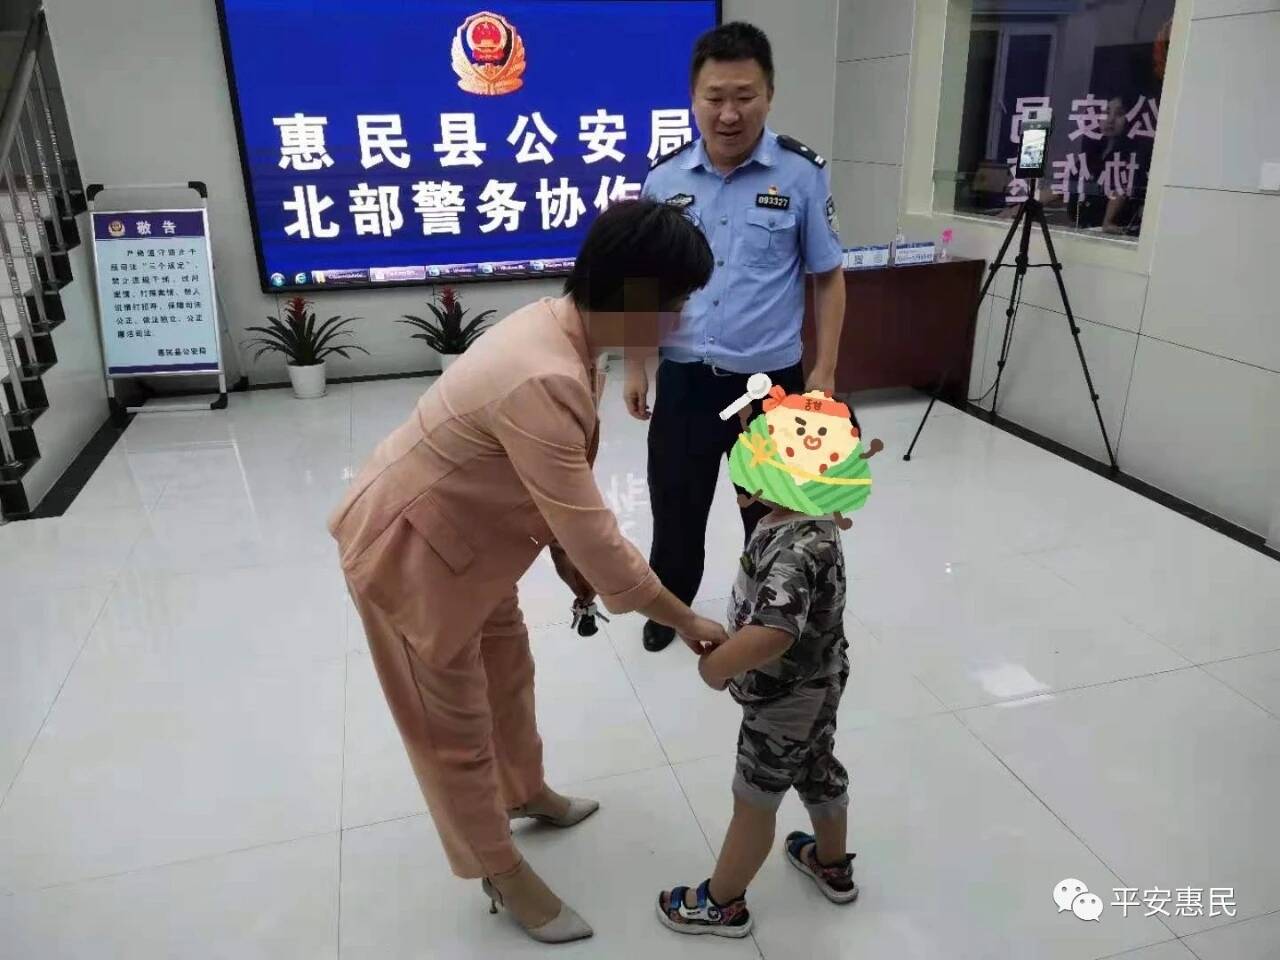 出门找妈妈迷了路 滨州惠民民警帮儿童找到父母